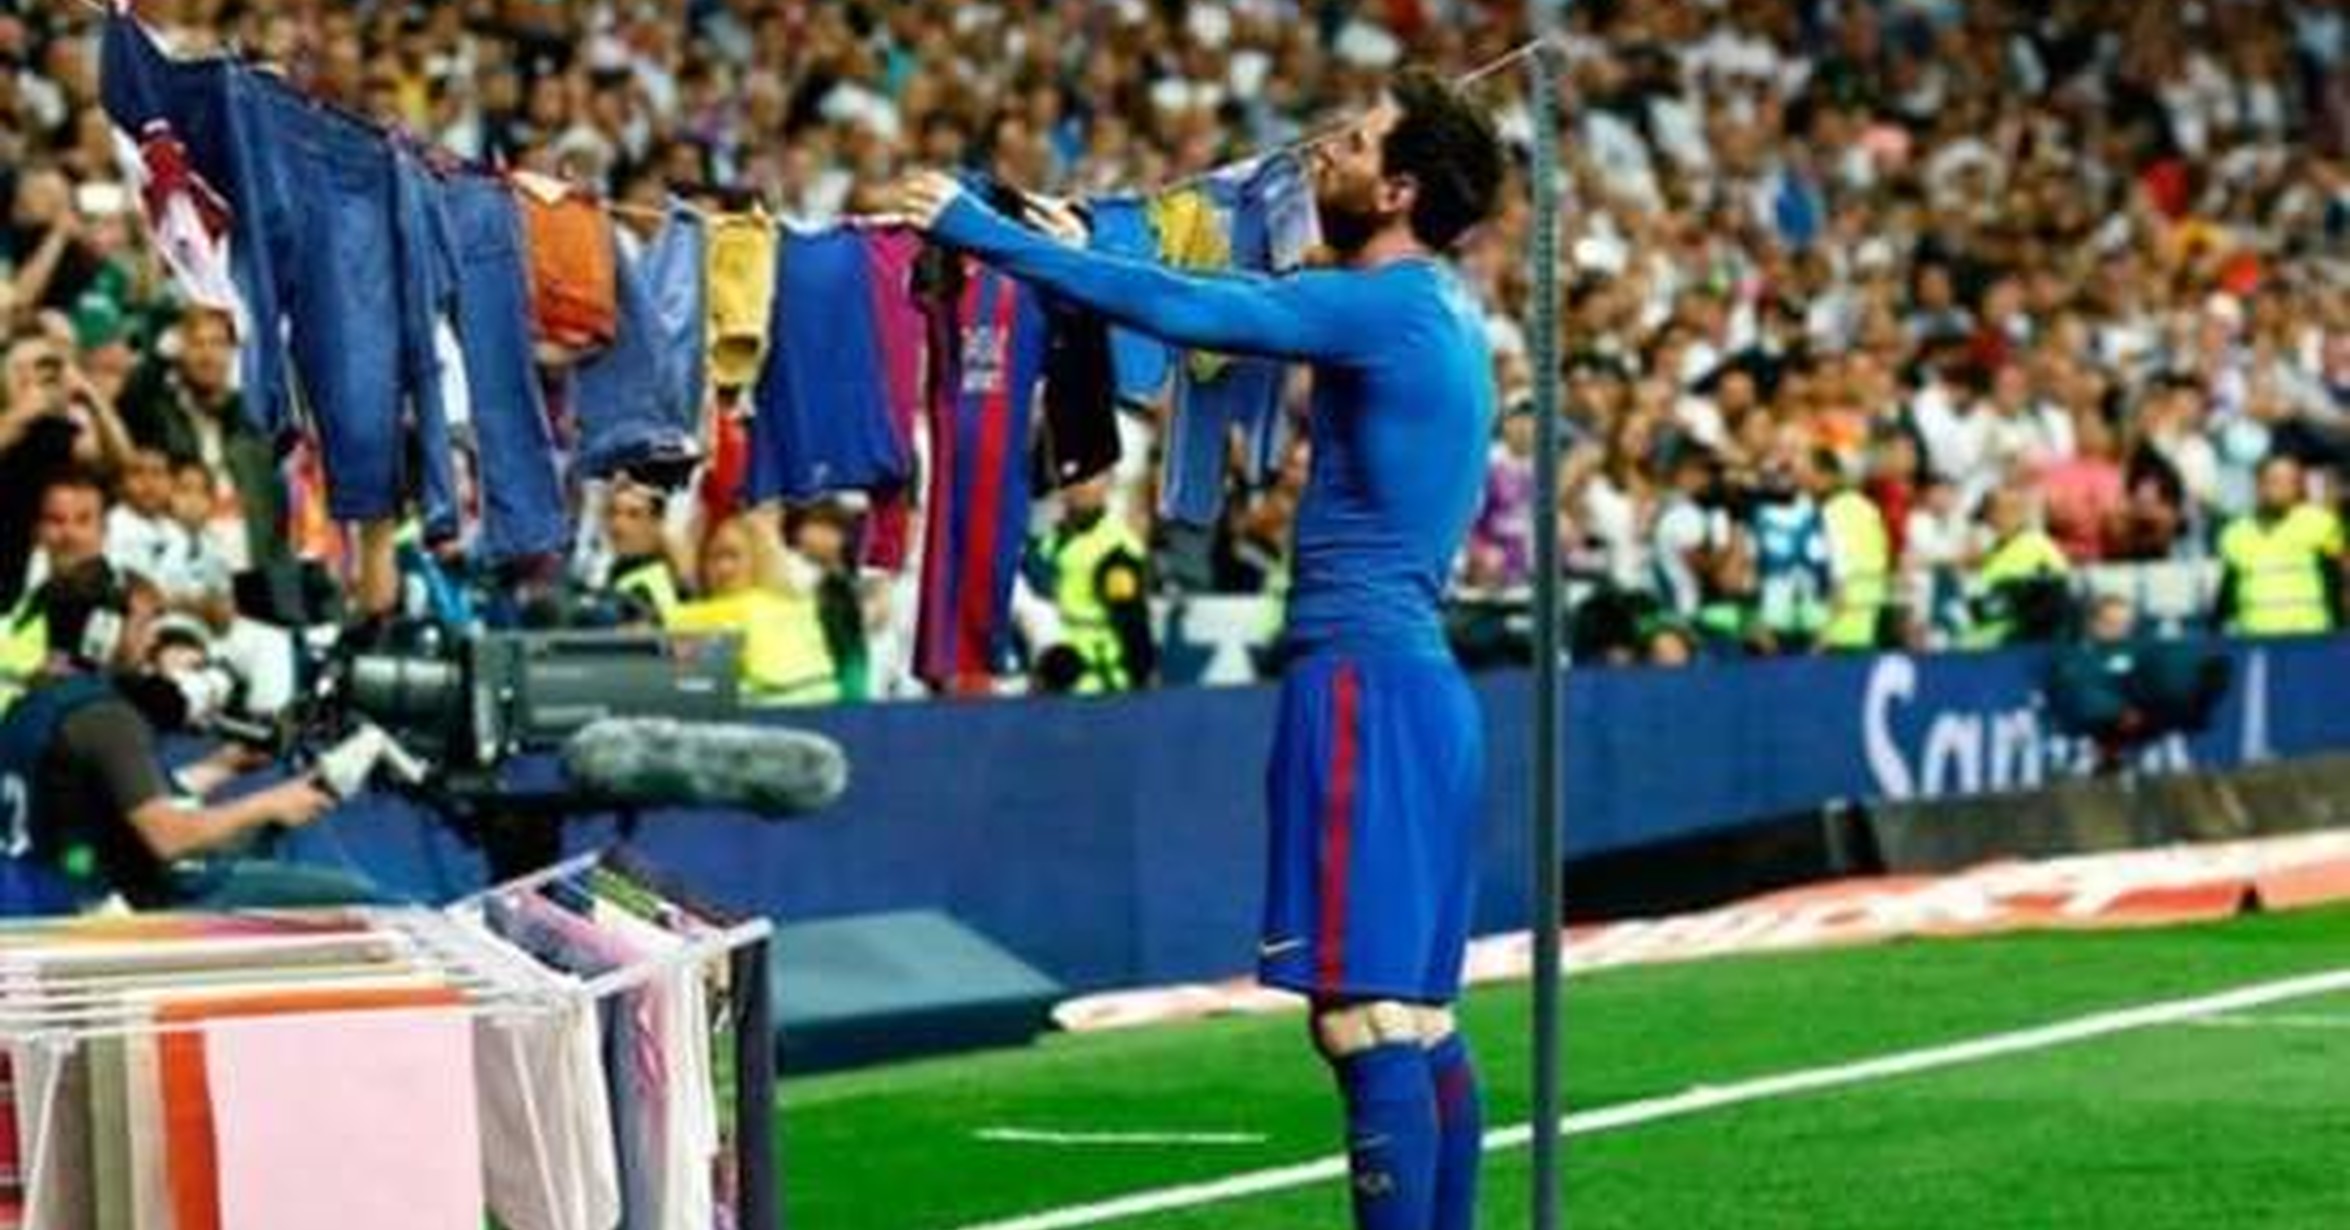 Messi tendiendo la ropa es lo mejor que vas a ver hoy, por @gazpachoblog